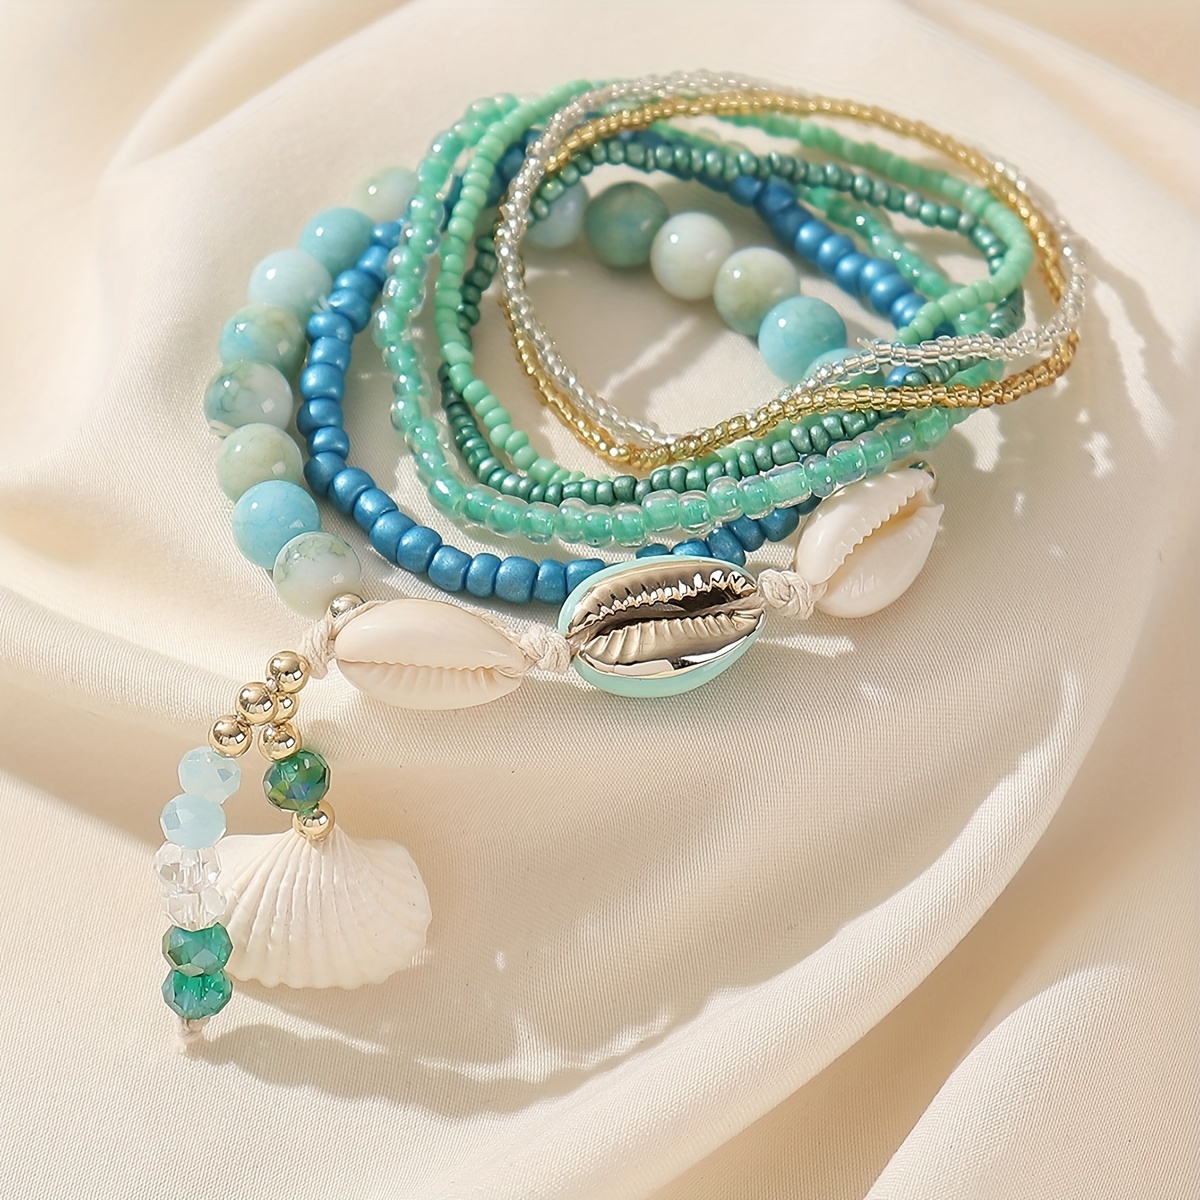 Handmade Ceramic Beads for Jewelry Making 7pcs Jumbo Beads 